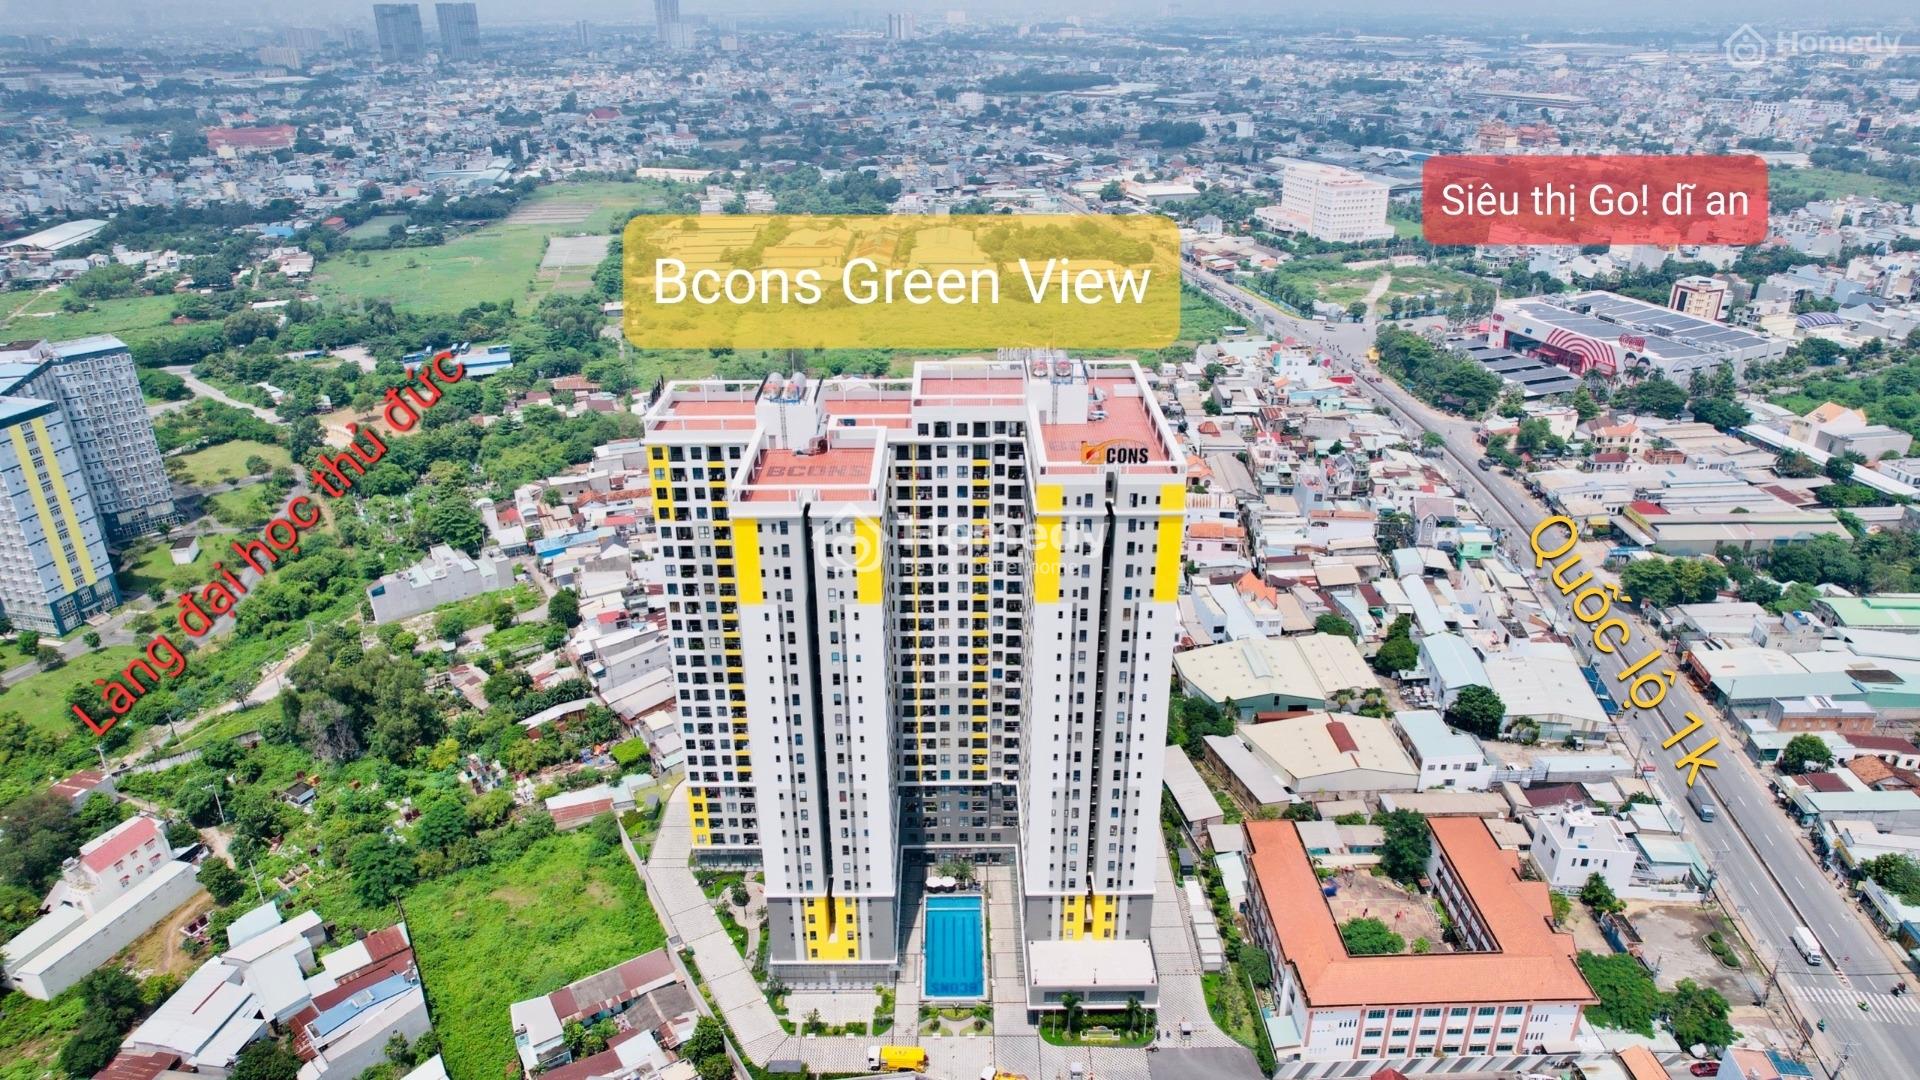 Hot Căn 2Pn 1Tỷ5 Bao Sổ Chung Cư Tân Hòa (Building)-Bcons Green View Đối Diện Siêu Thị Go! Dĩ An